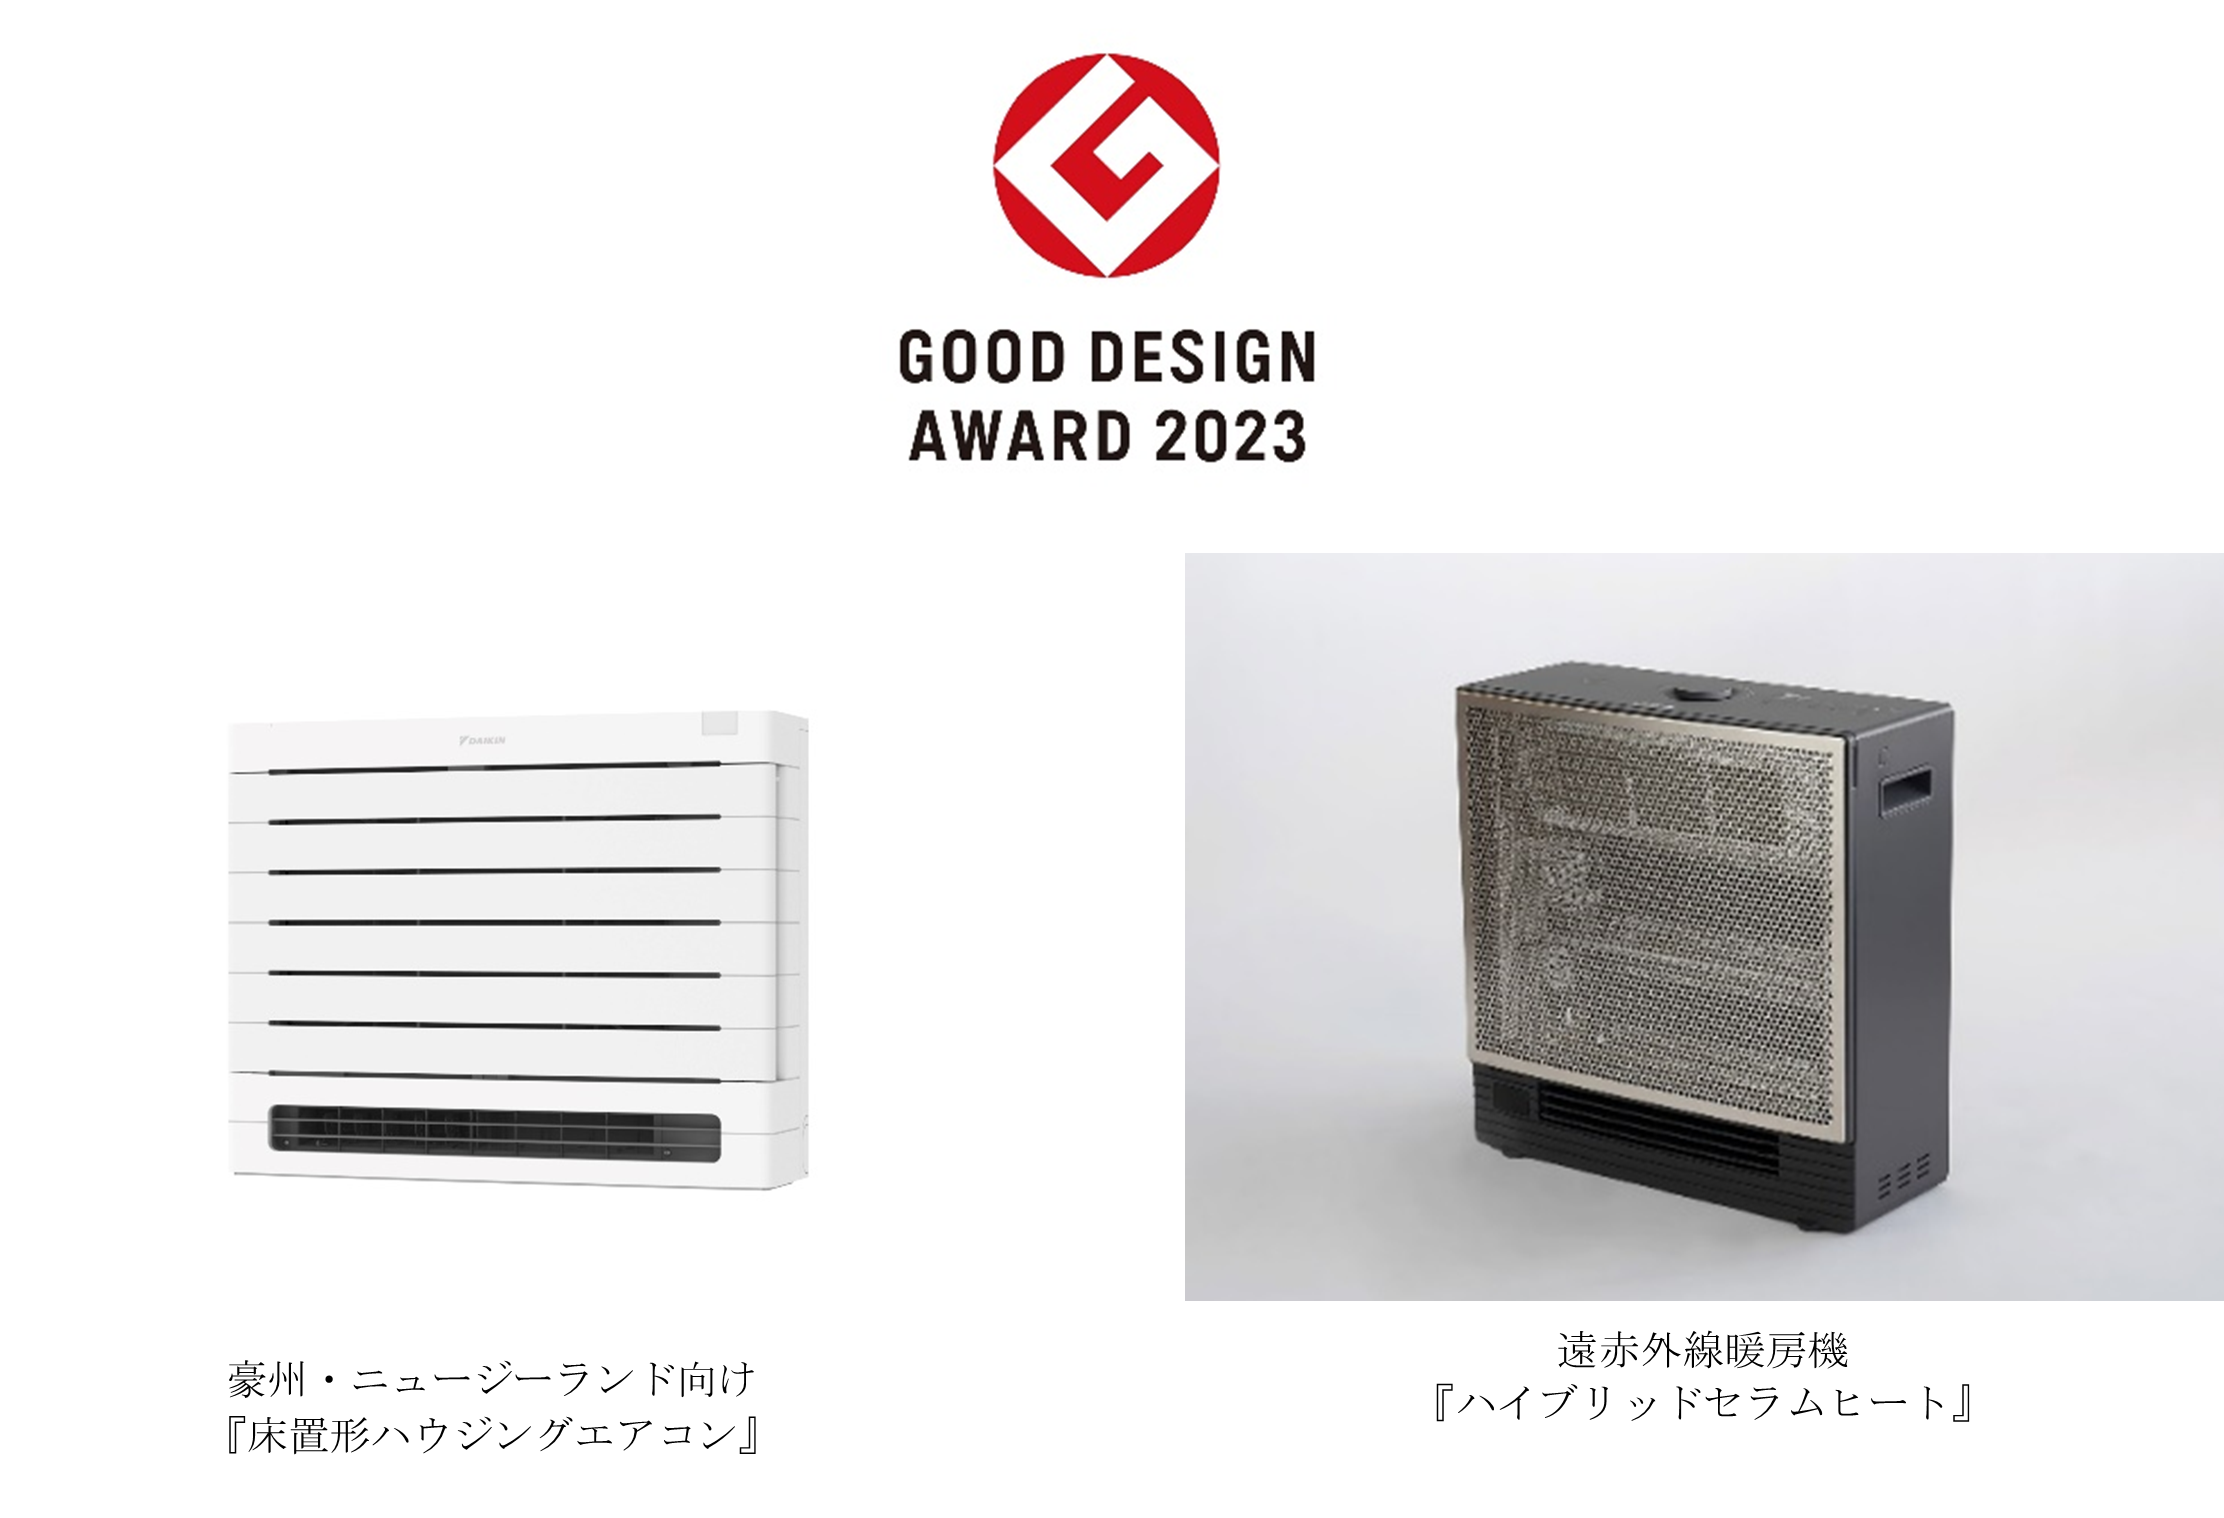 【ダイキン工業】『床置形ハウジングエアコン』と『ハイブリッドセラムヒート』の2製品が「2023年度グッドデザイン賞」を受賞の画像